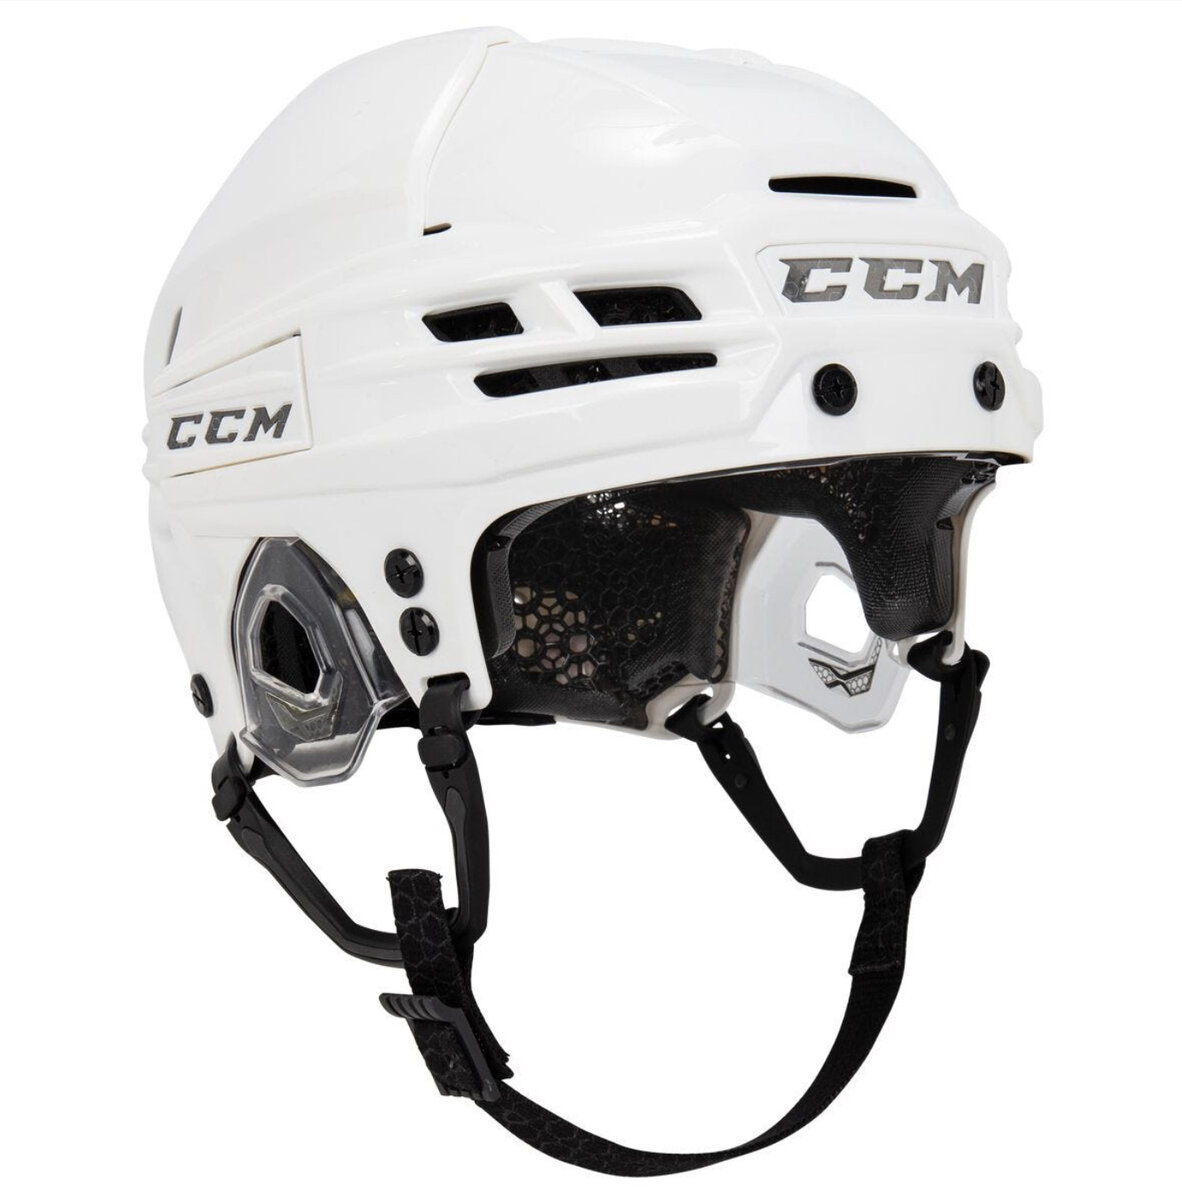 CCM Super Tacks X - следующая эволюция в технологиях хоккейных шлемов Шлем CCM Super Tacks X будет поддерживать вашу голову в отличном состоянии от гудка до гудка.